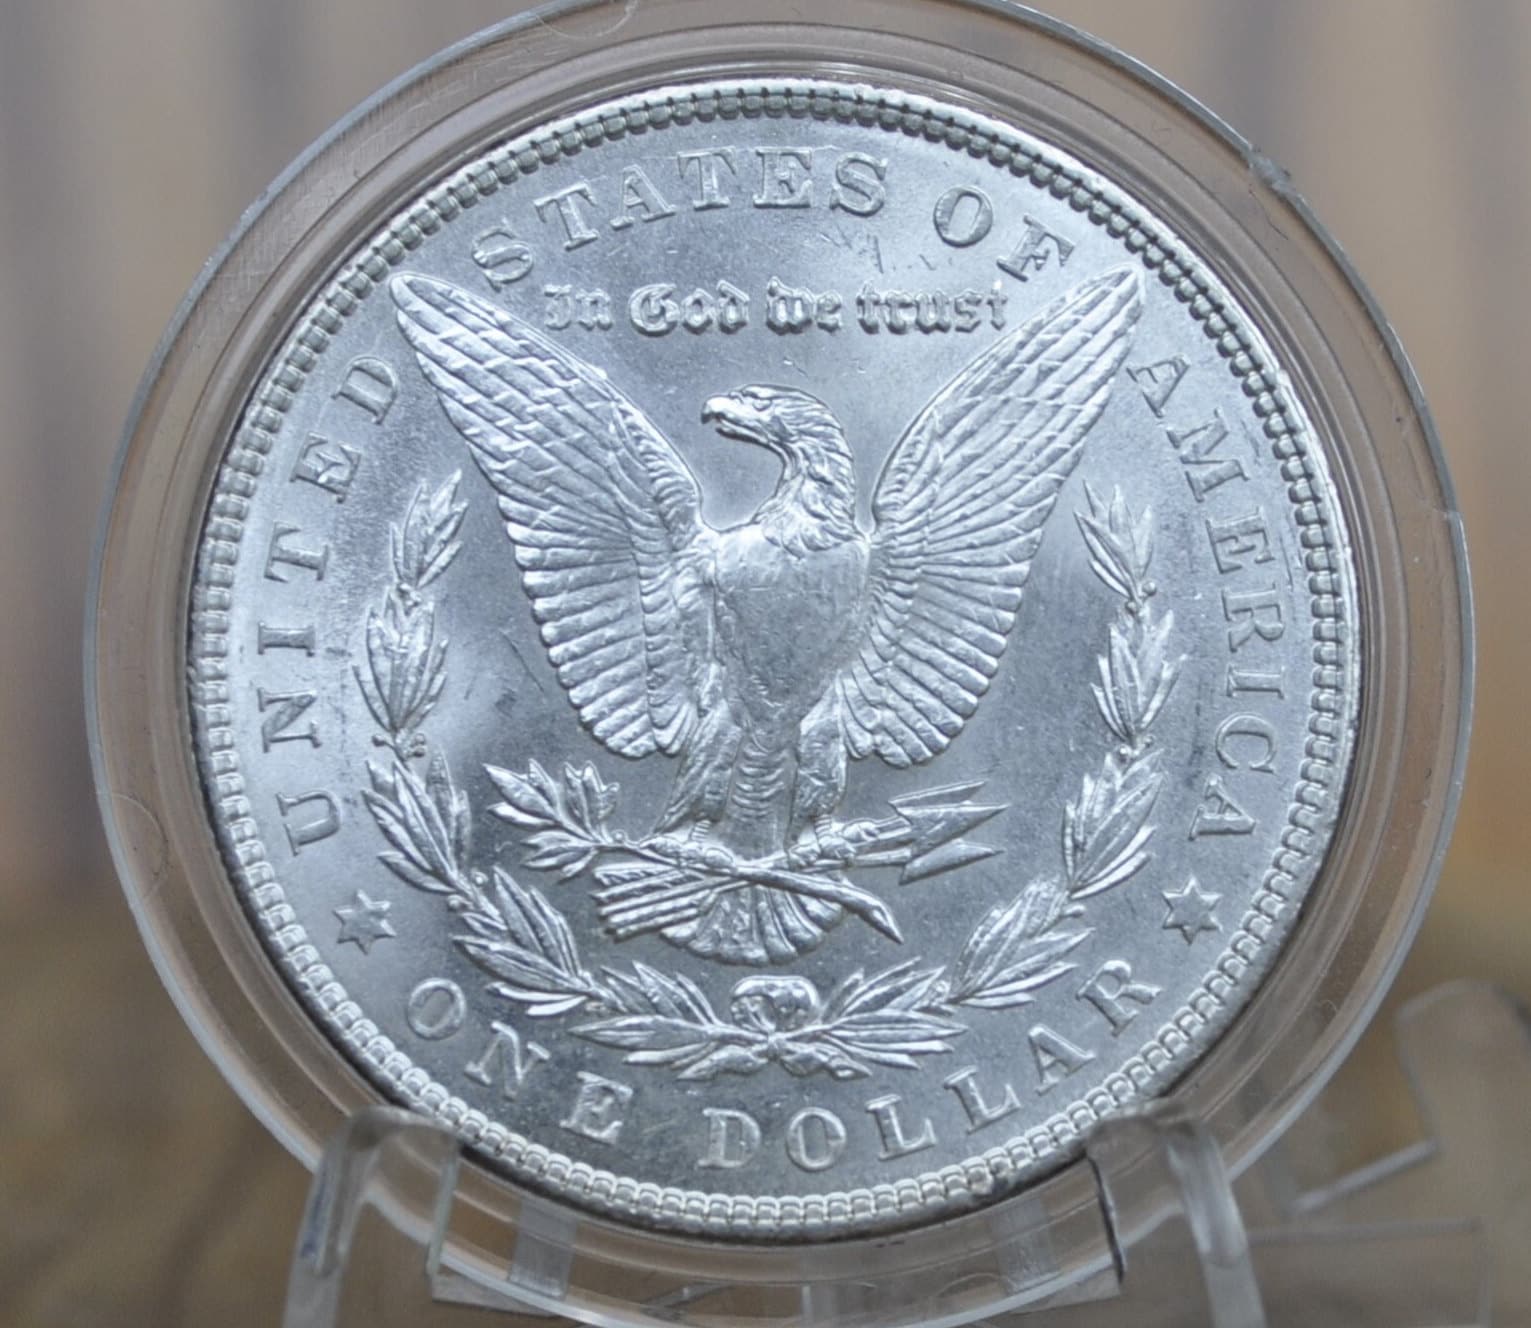 1902 Morgan Silver Dollar - MS62 (Uncirculated), Beautiful Mint Luster - 1902-P Morgan Dollar - 1902 Silver Dollar - No Mint Mark